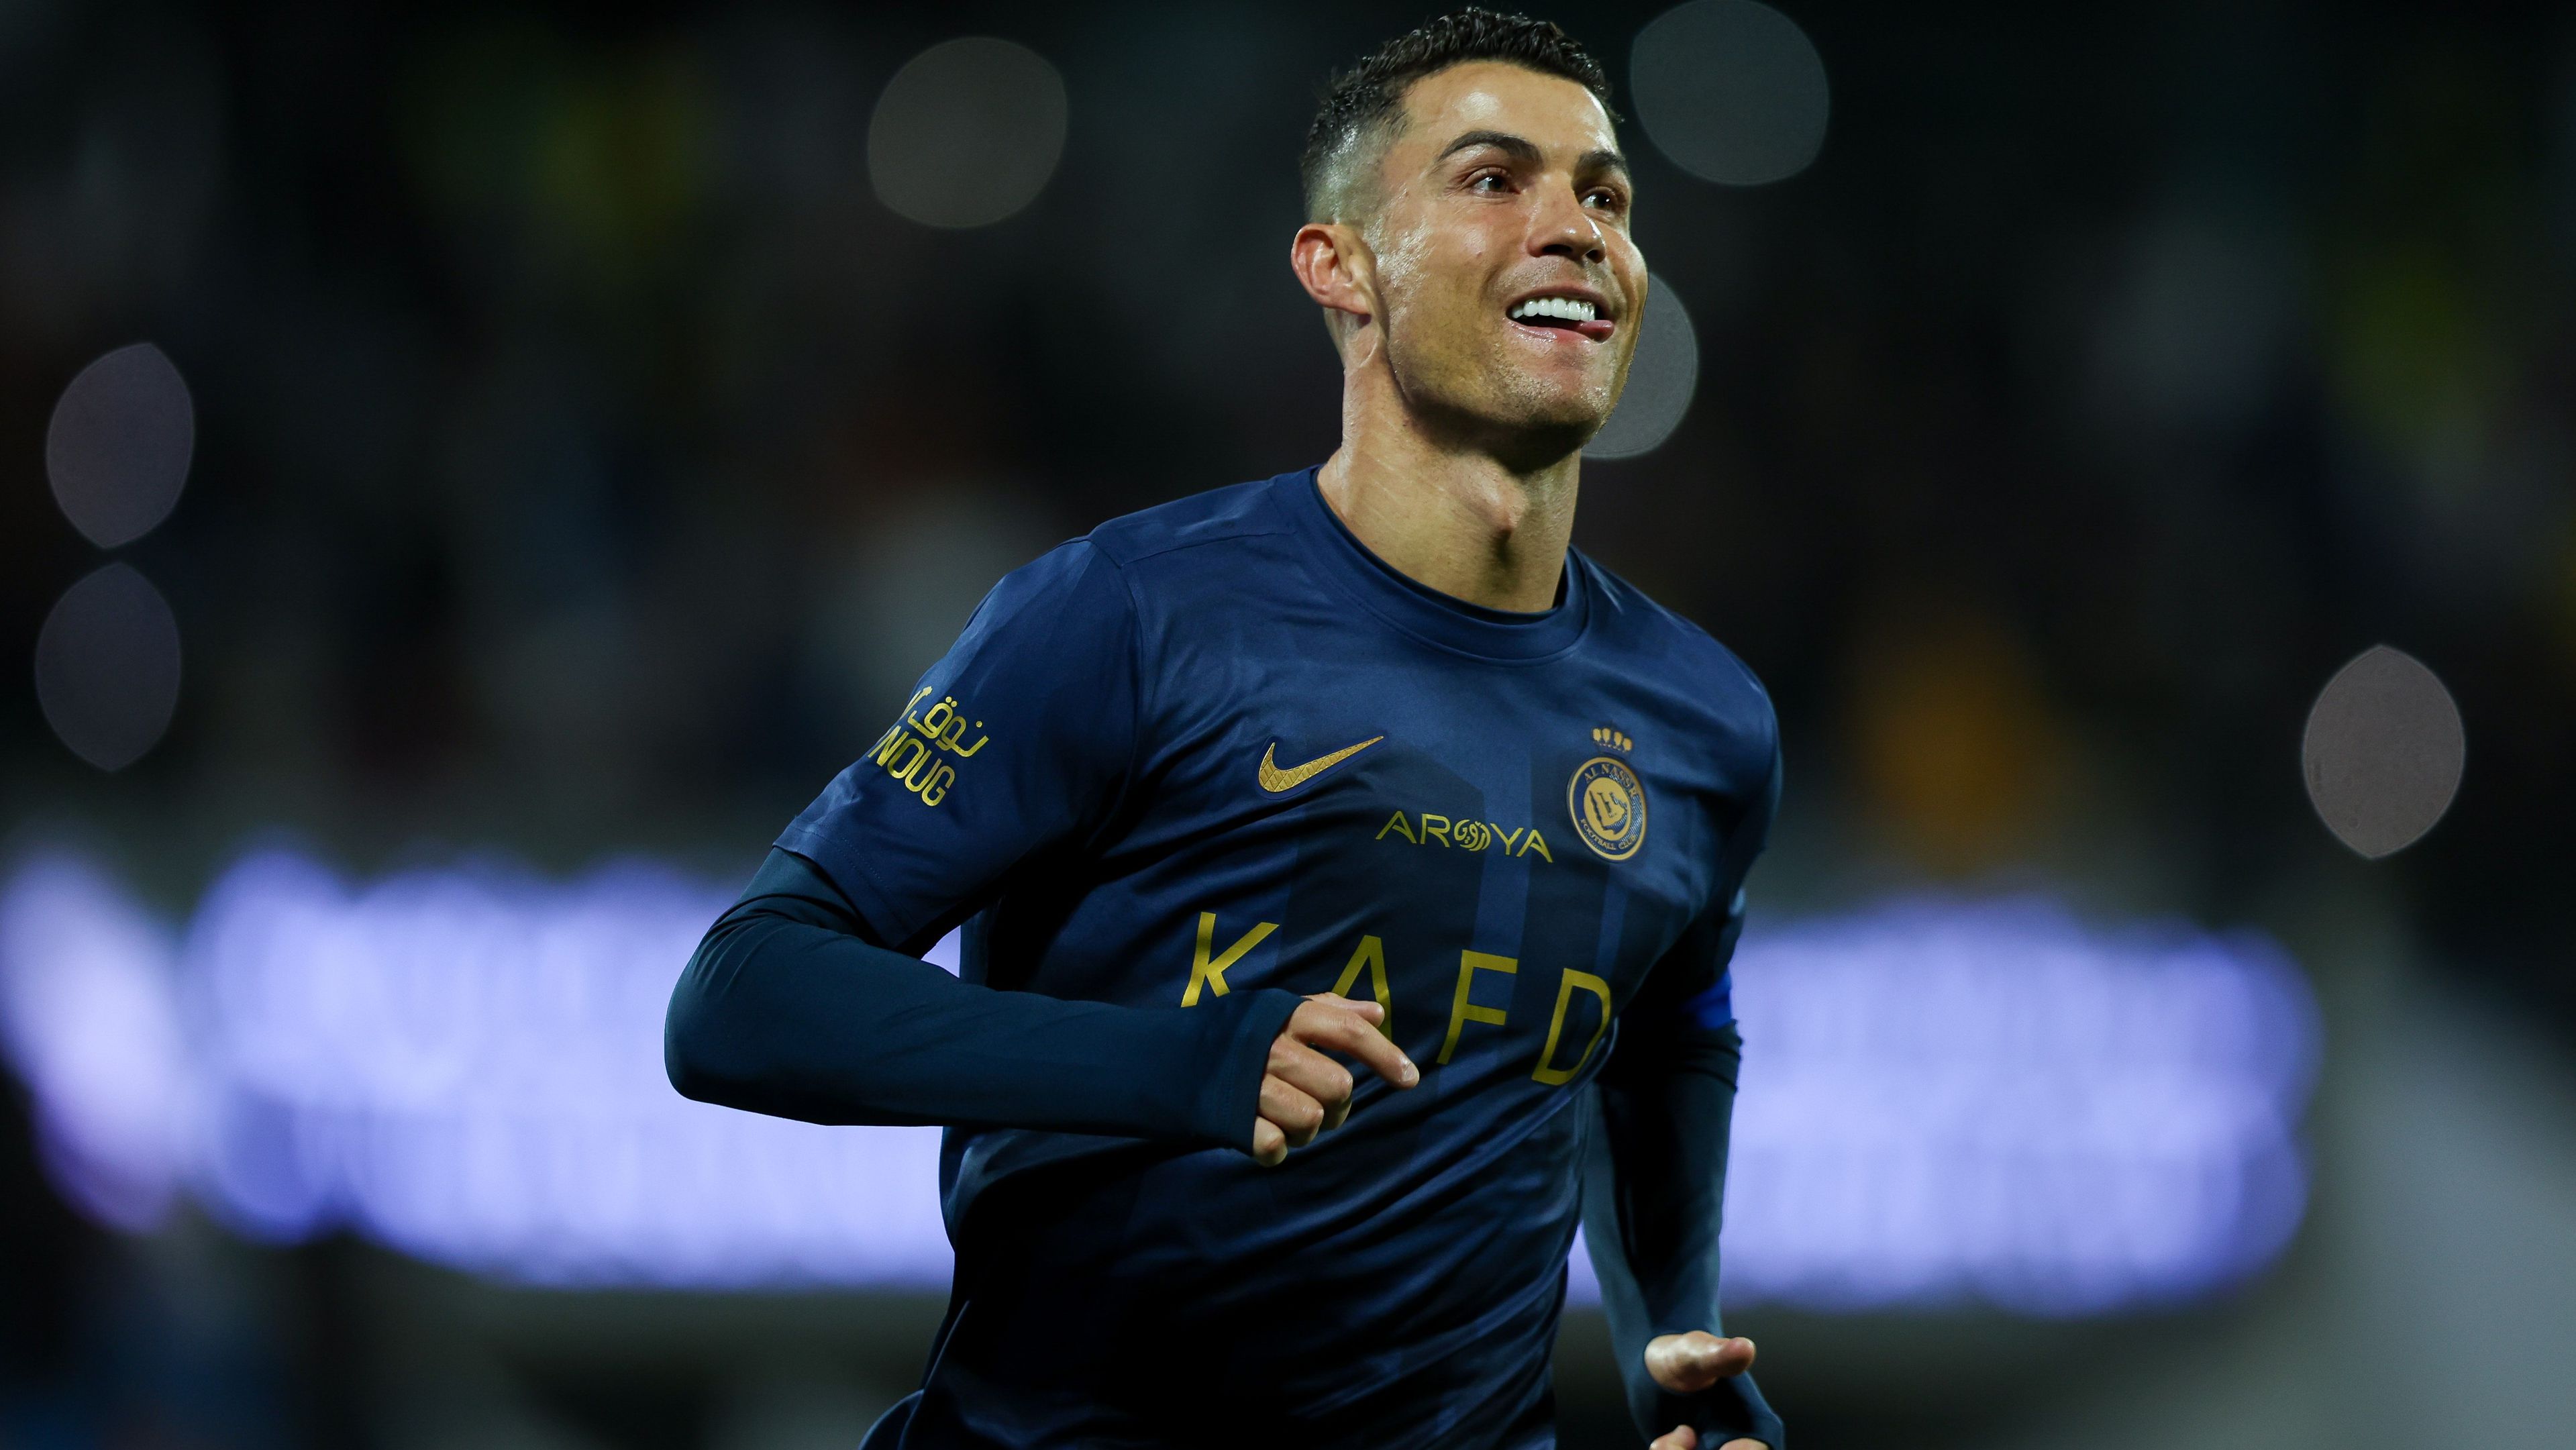 Ronaldo pert nyert a Juventus ellen; Klopp nem beszél kiesésről – reggeli hírösszefoglaló